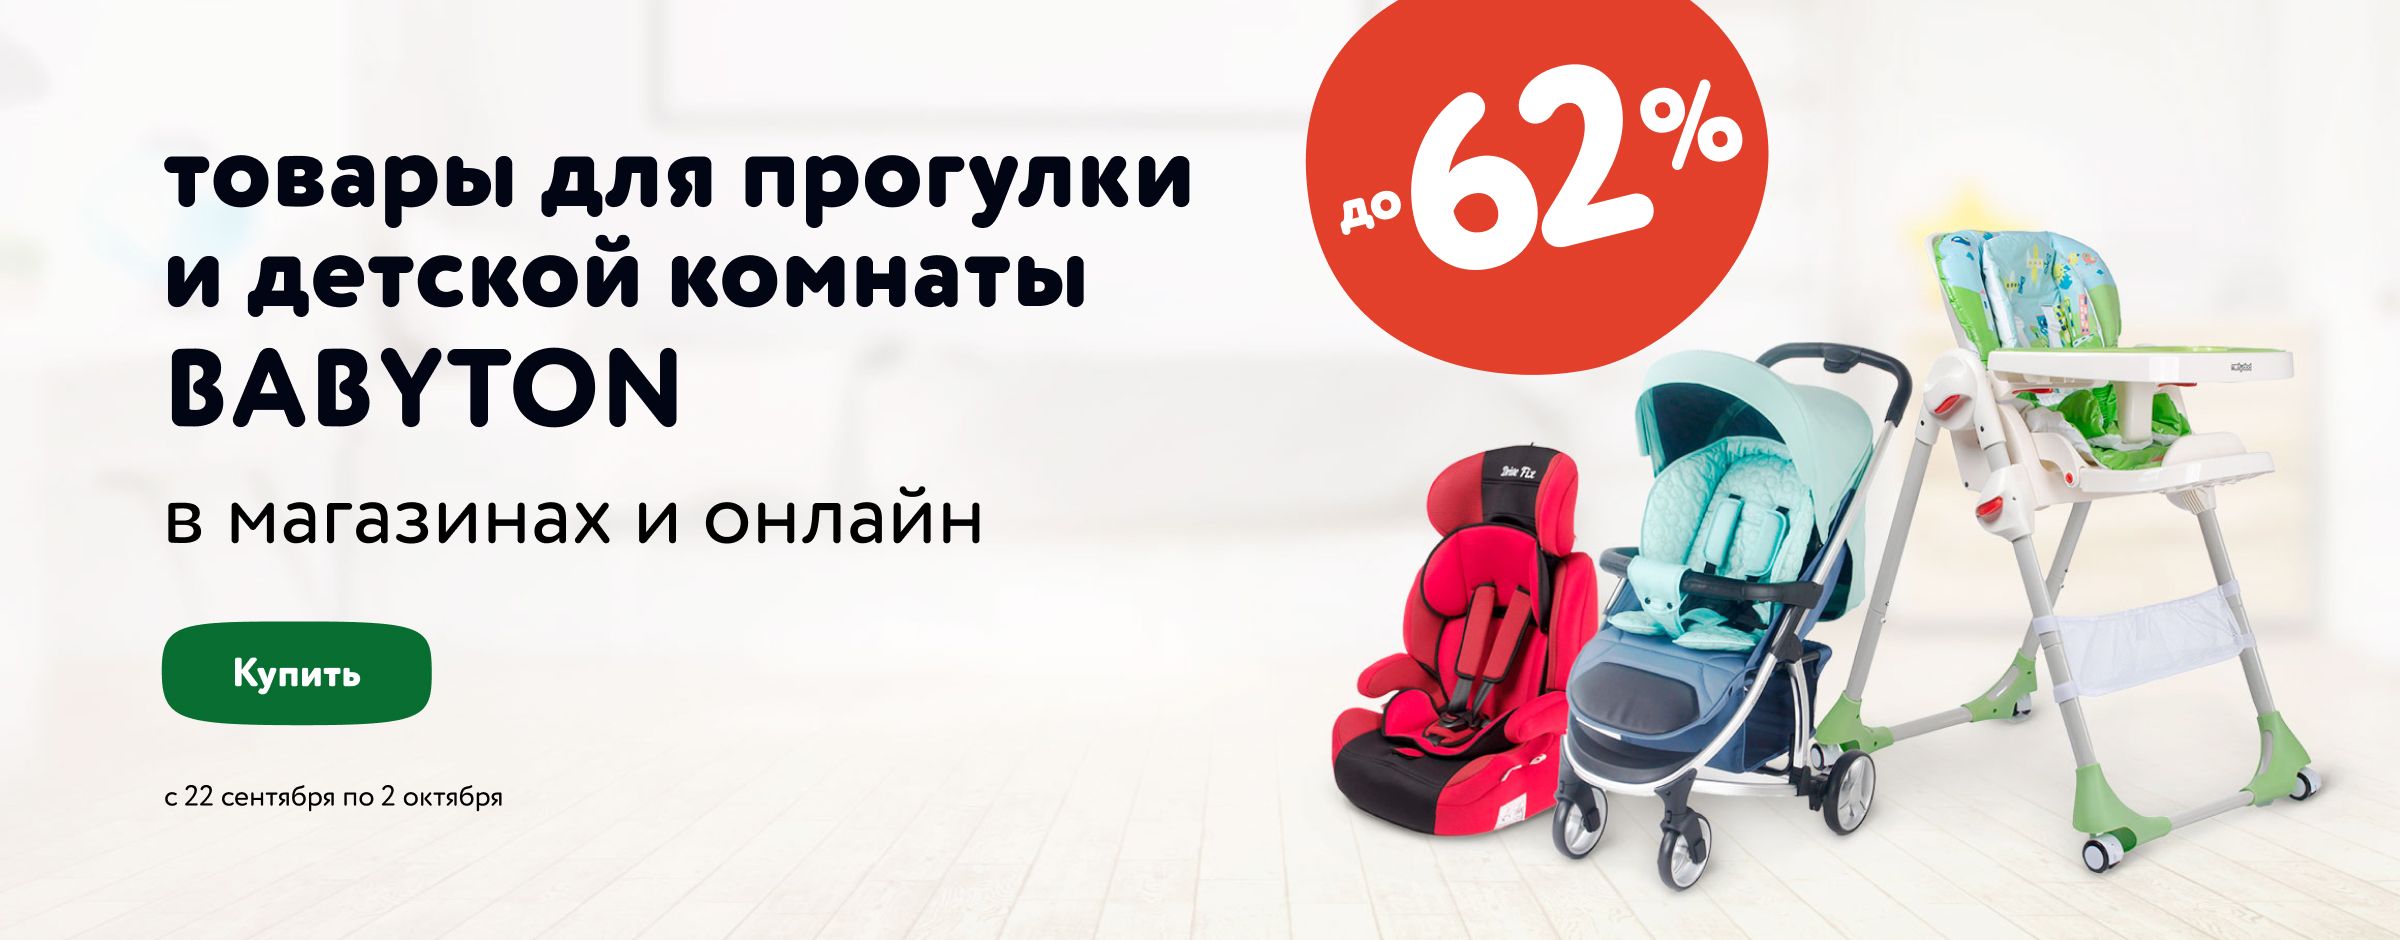 -62% на товары для прогулки и детской комнаты BABYTON